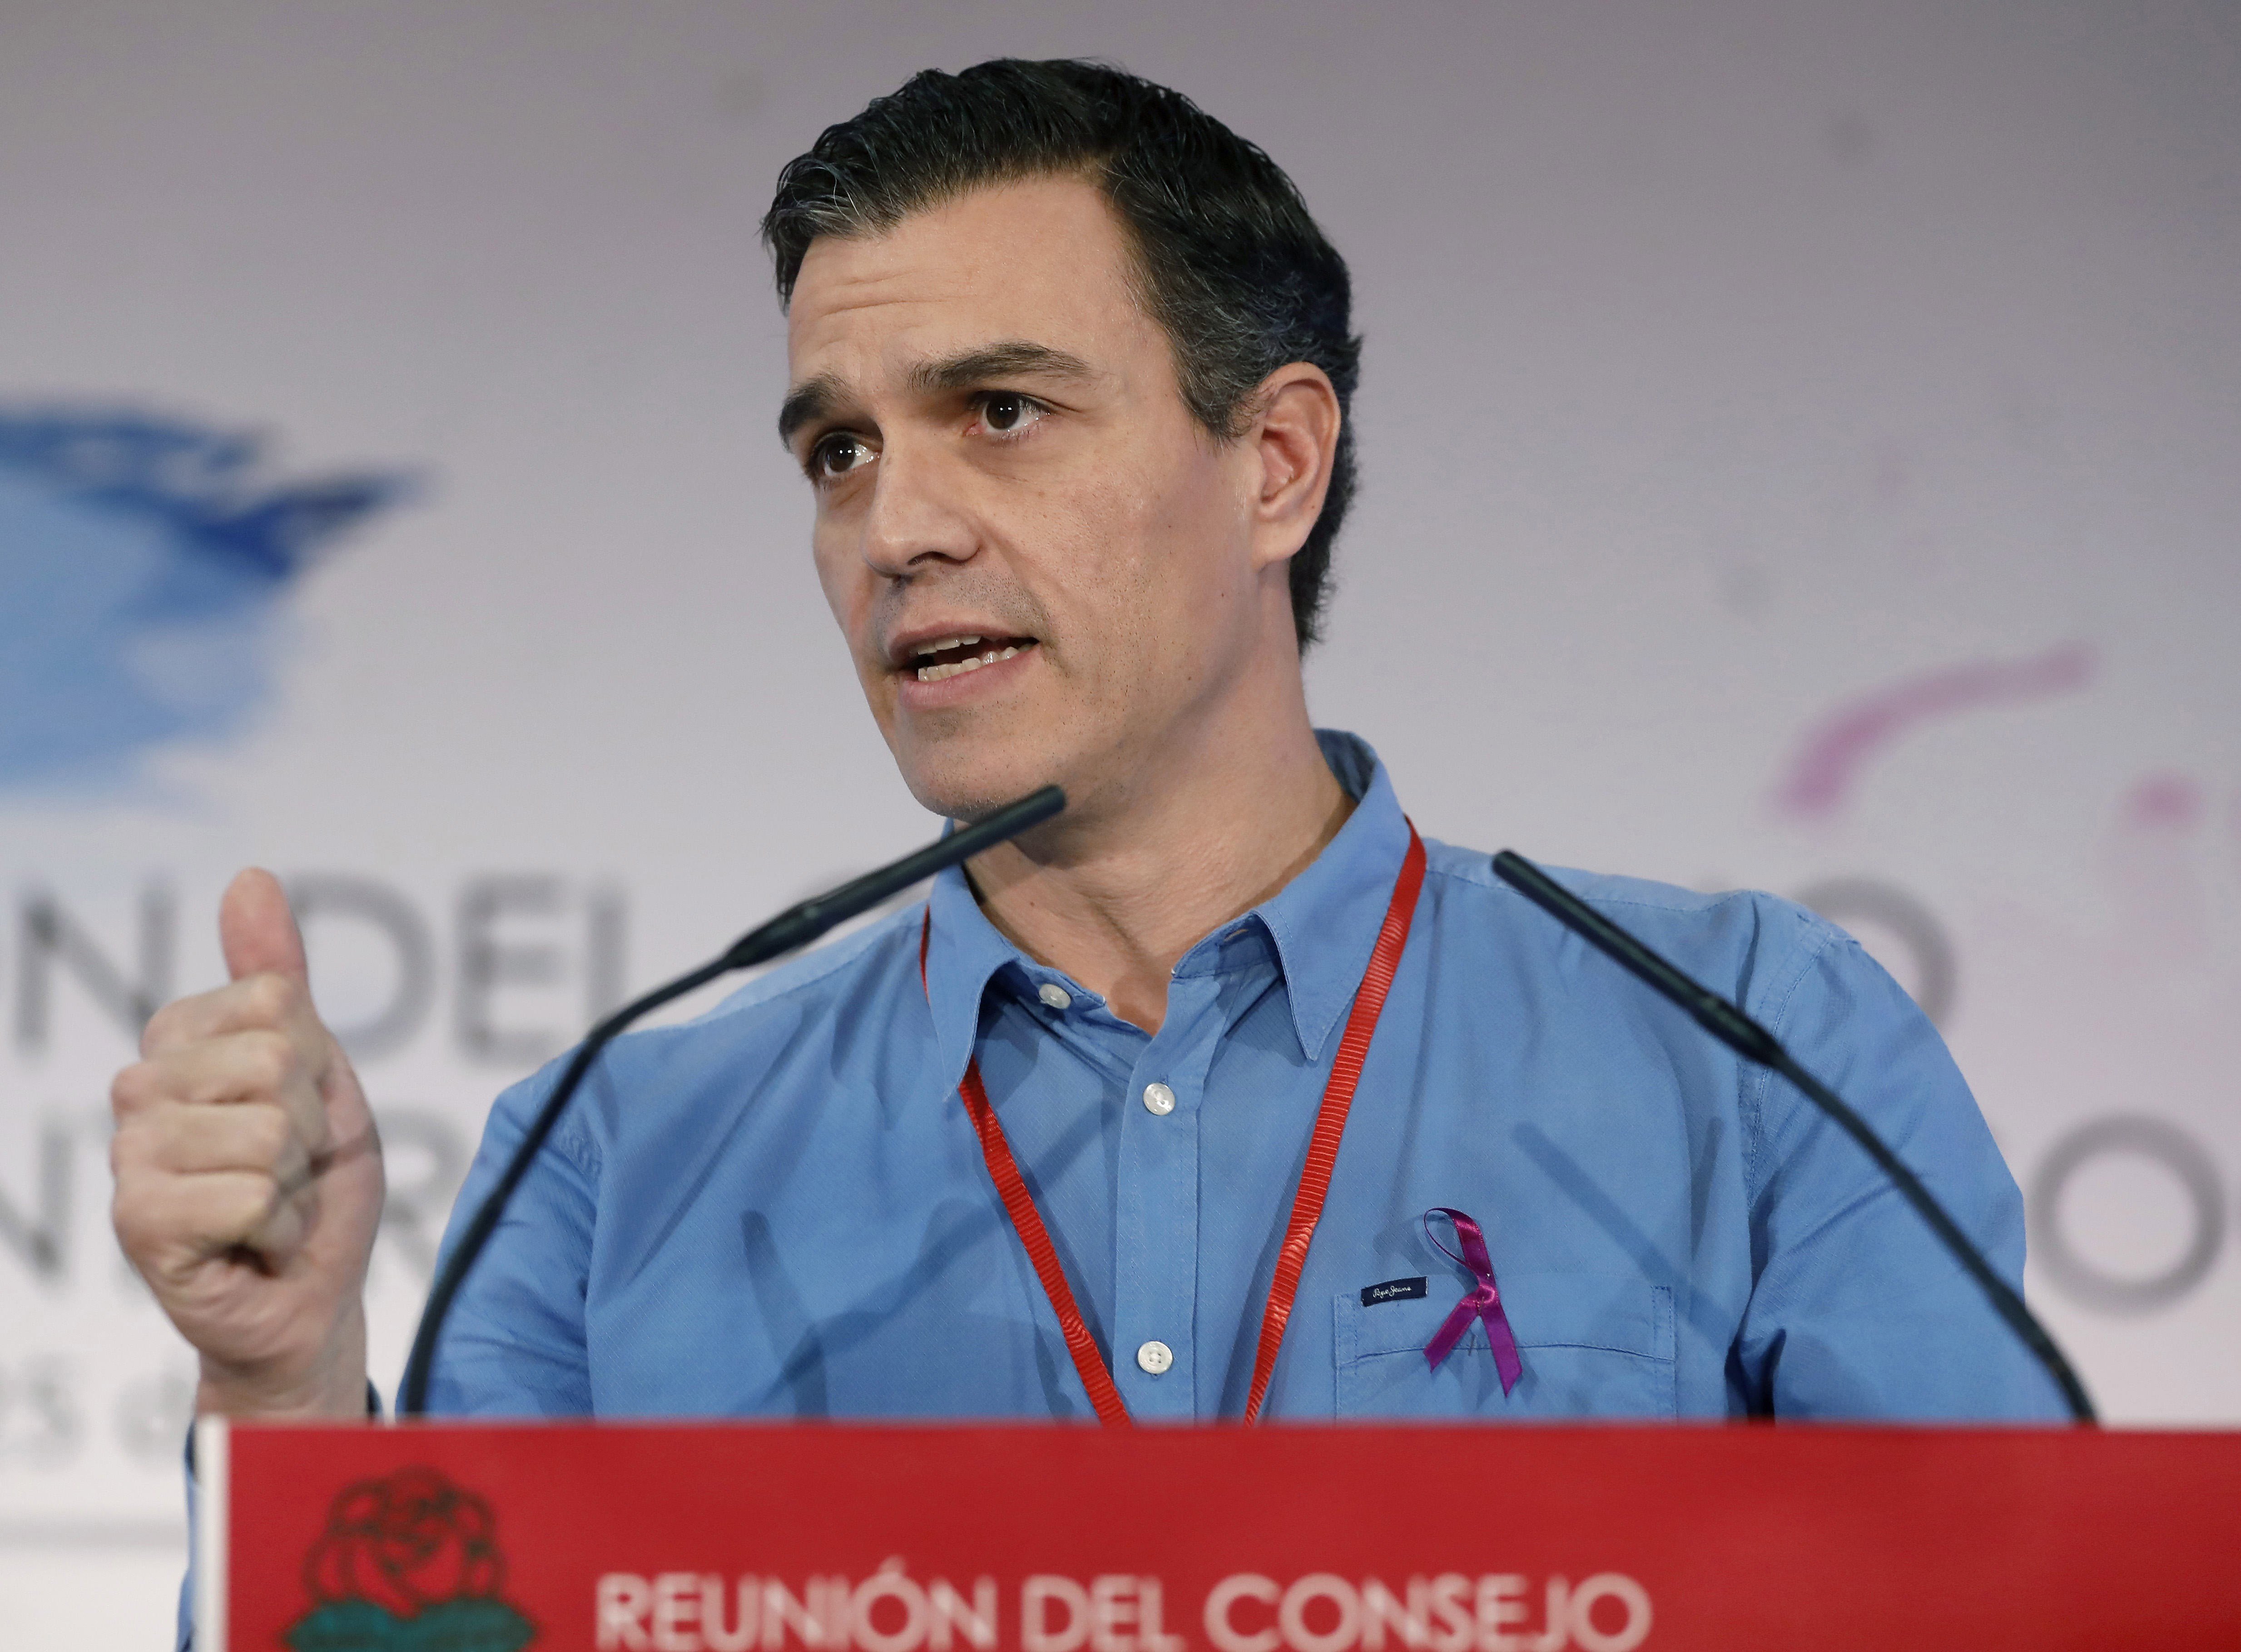 El PSOE i el PSC ratificaran el 155 malgrat els dubtes de Rajoy per reformar la Constitució